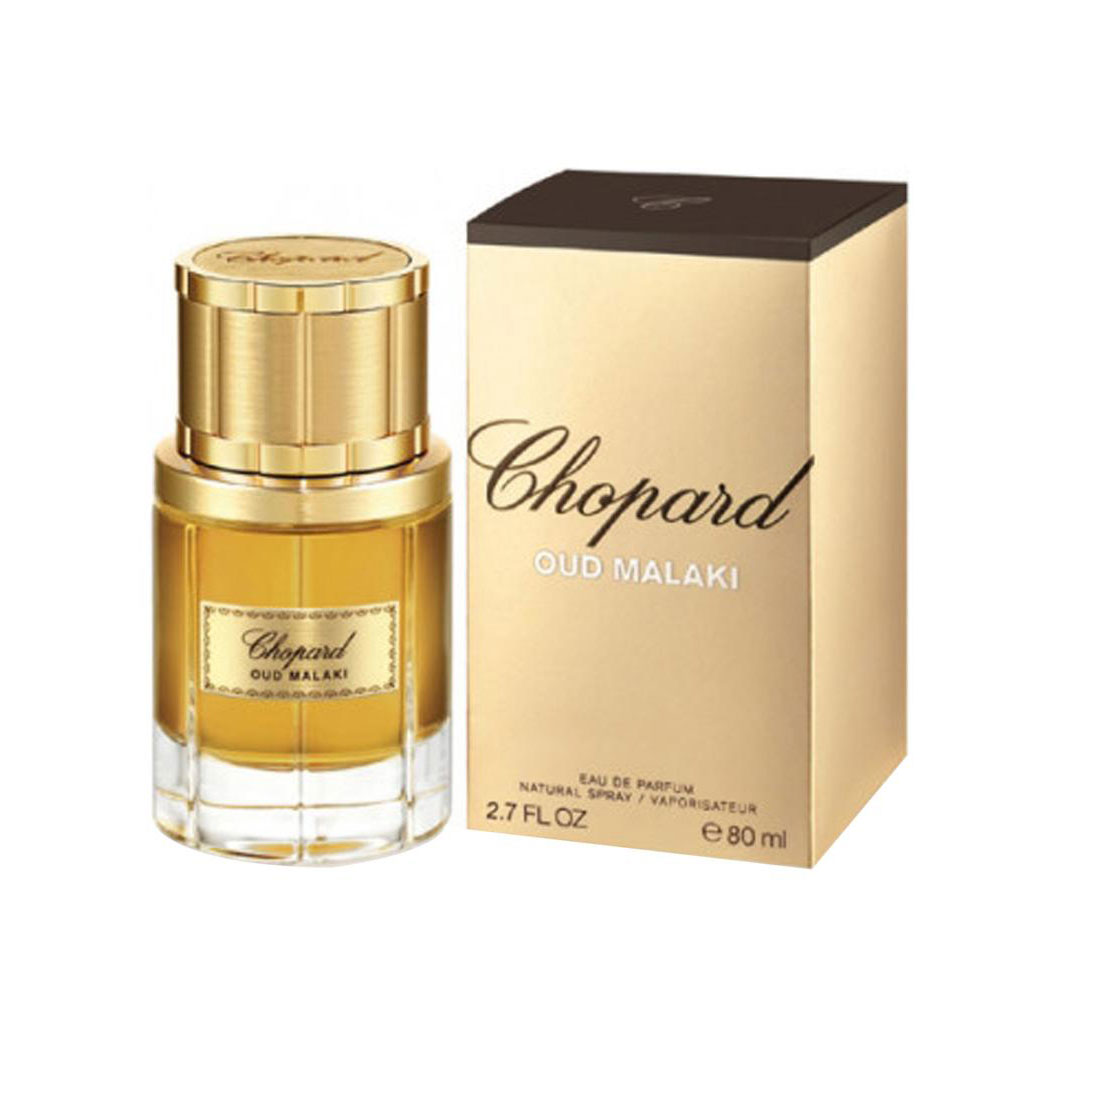 Chopard Oud Malaki For Men Eau De Parfum 80ml at Ratans Online Shop - Perfumes Wholesale and Retailer Fragrance